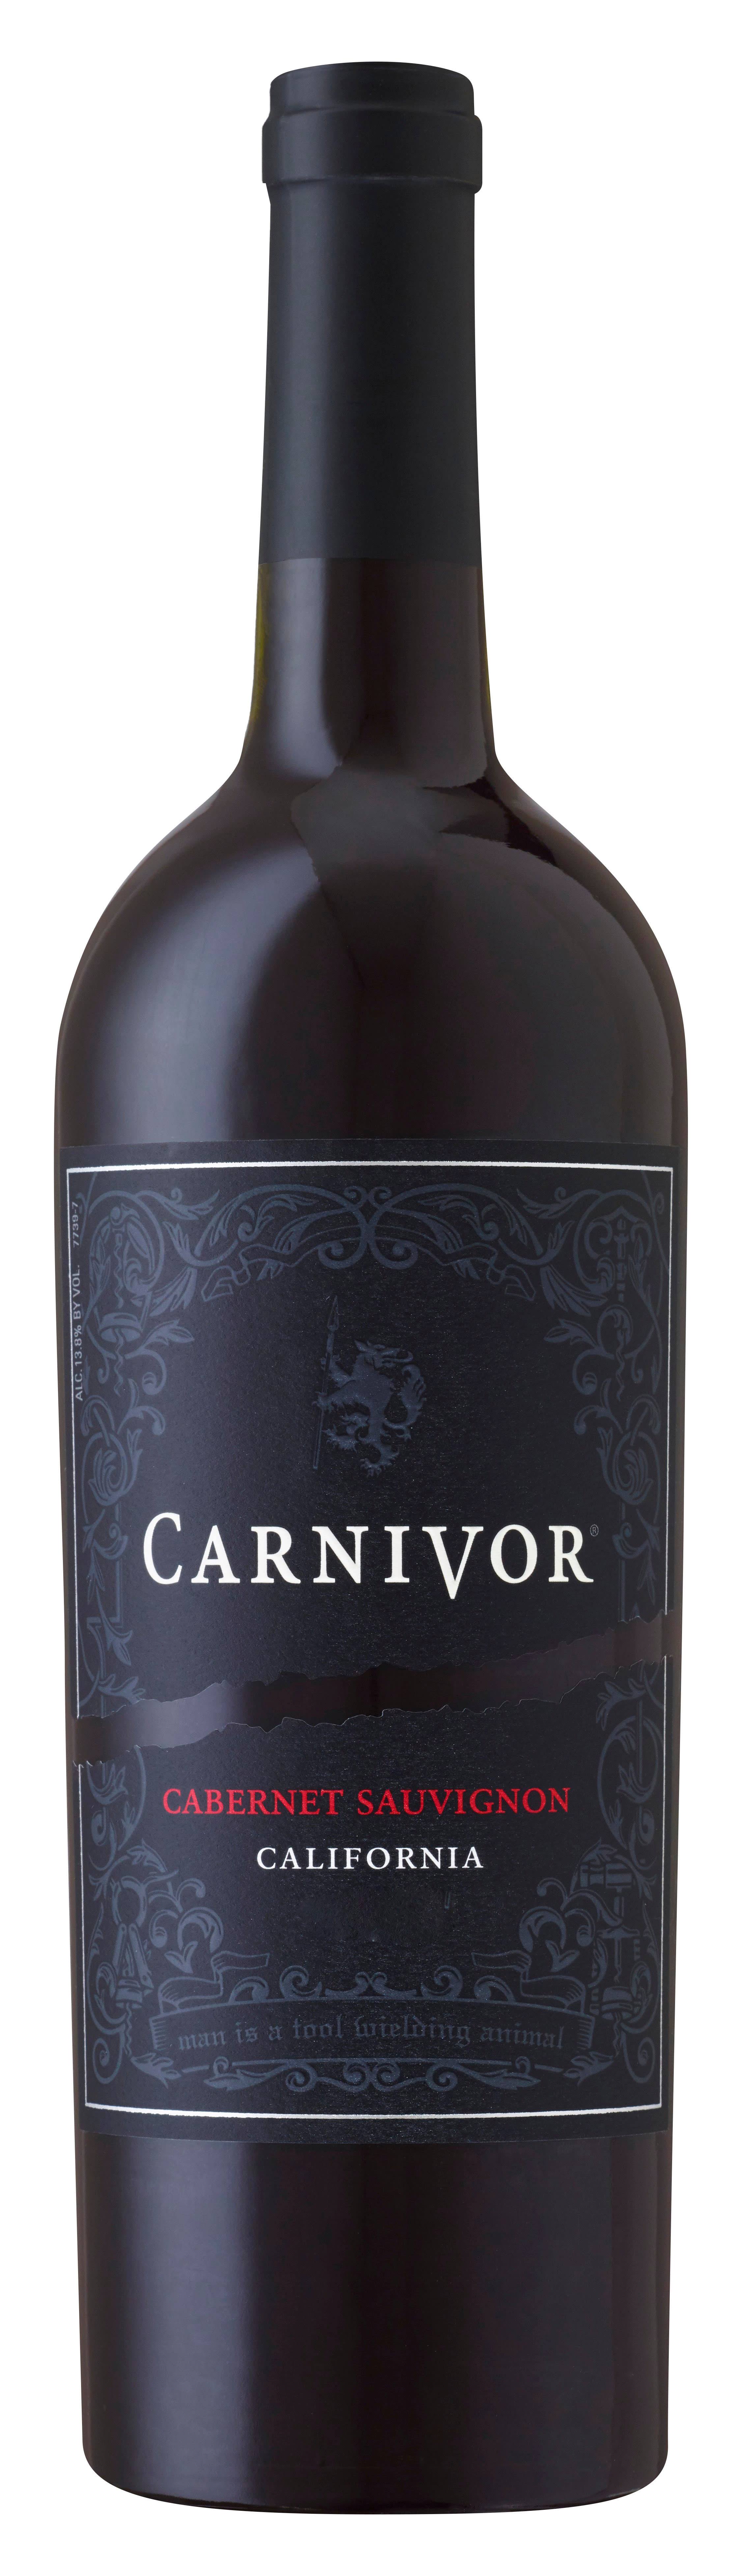 Carnivor Cabernet Sauvignon Red Wine - California, 750ml